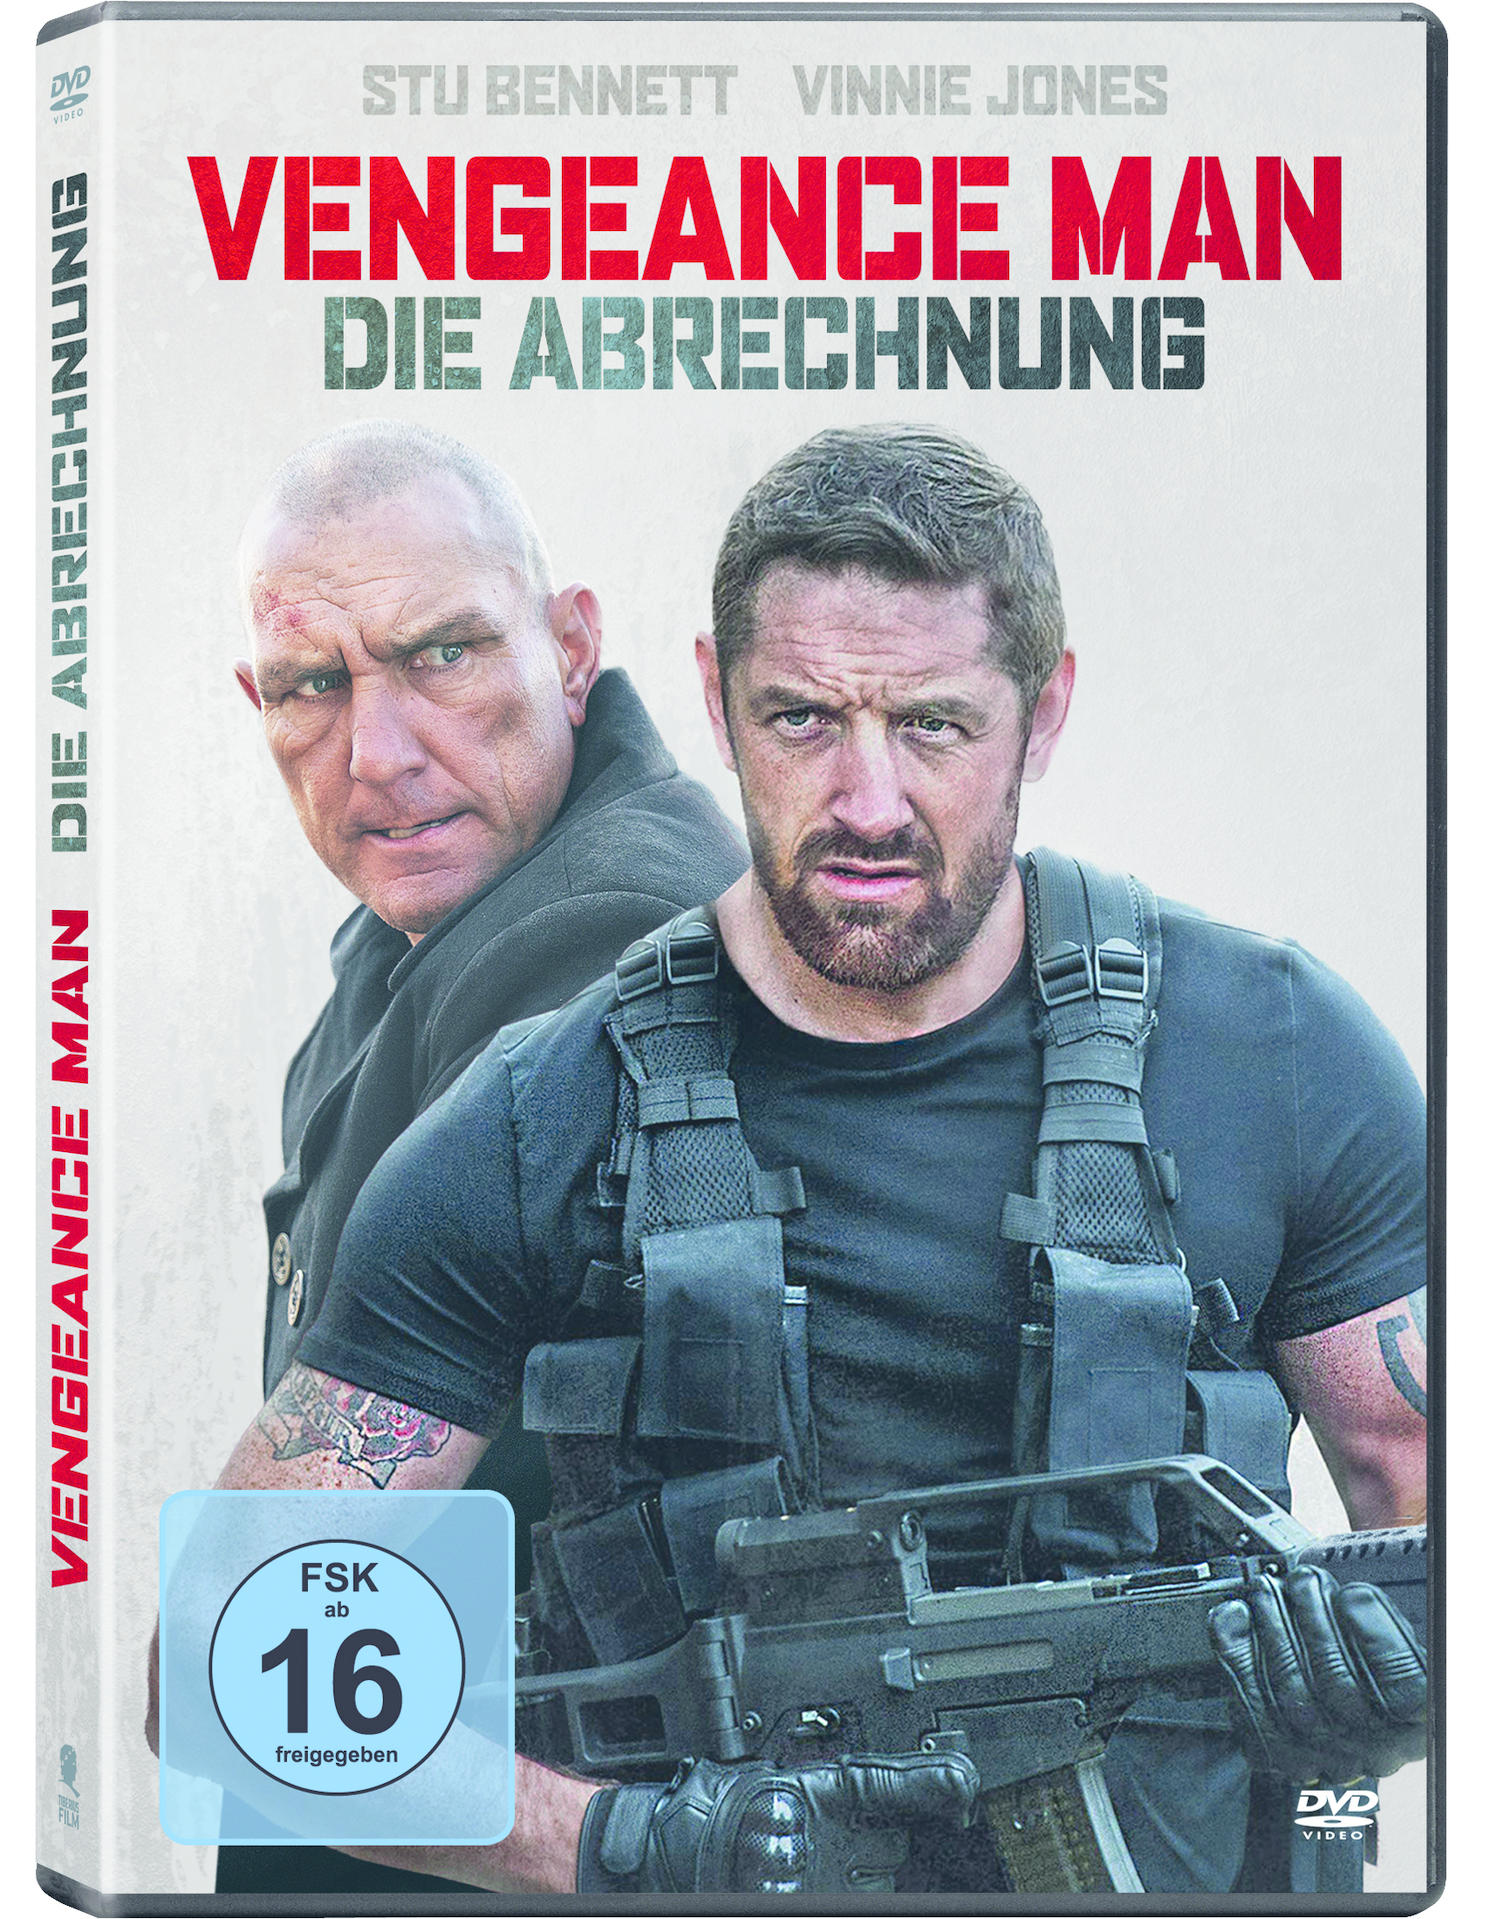 Man Abrechnung Venegance DVD - Die